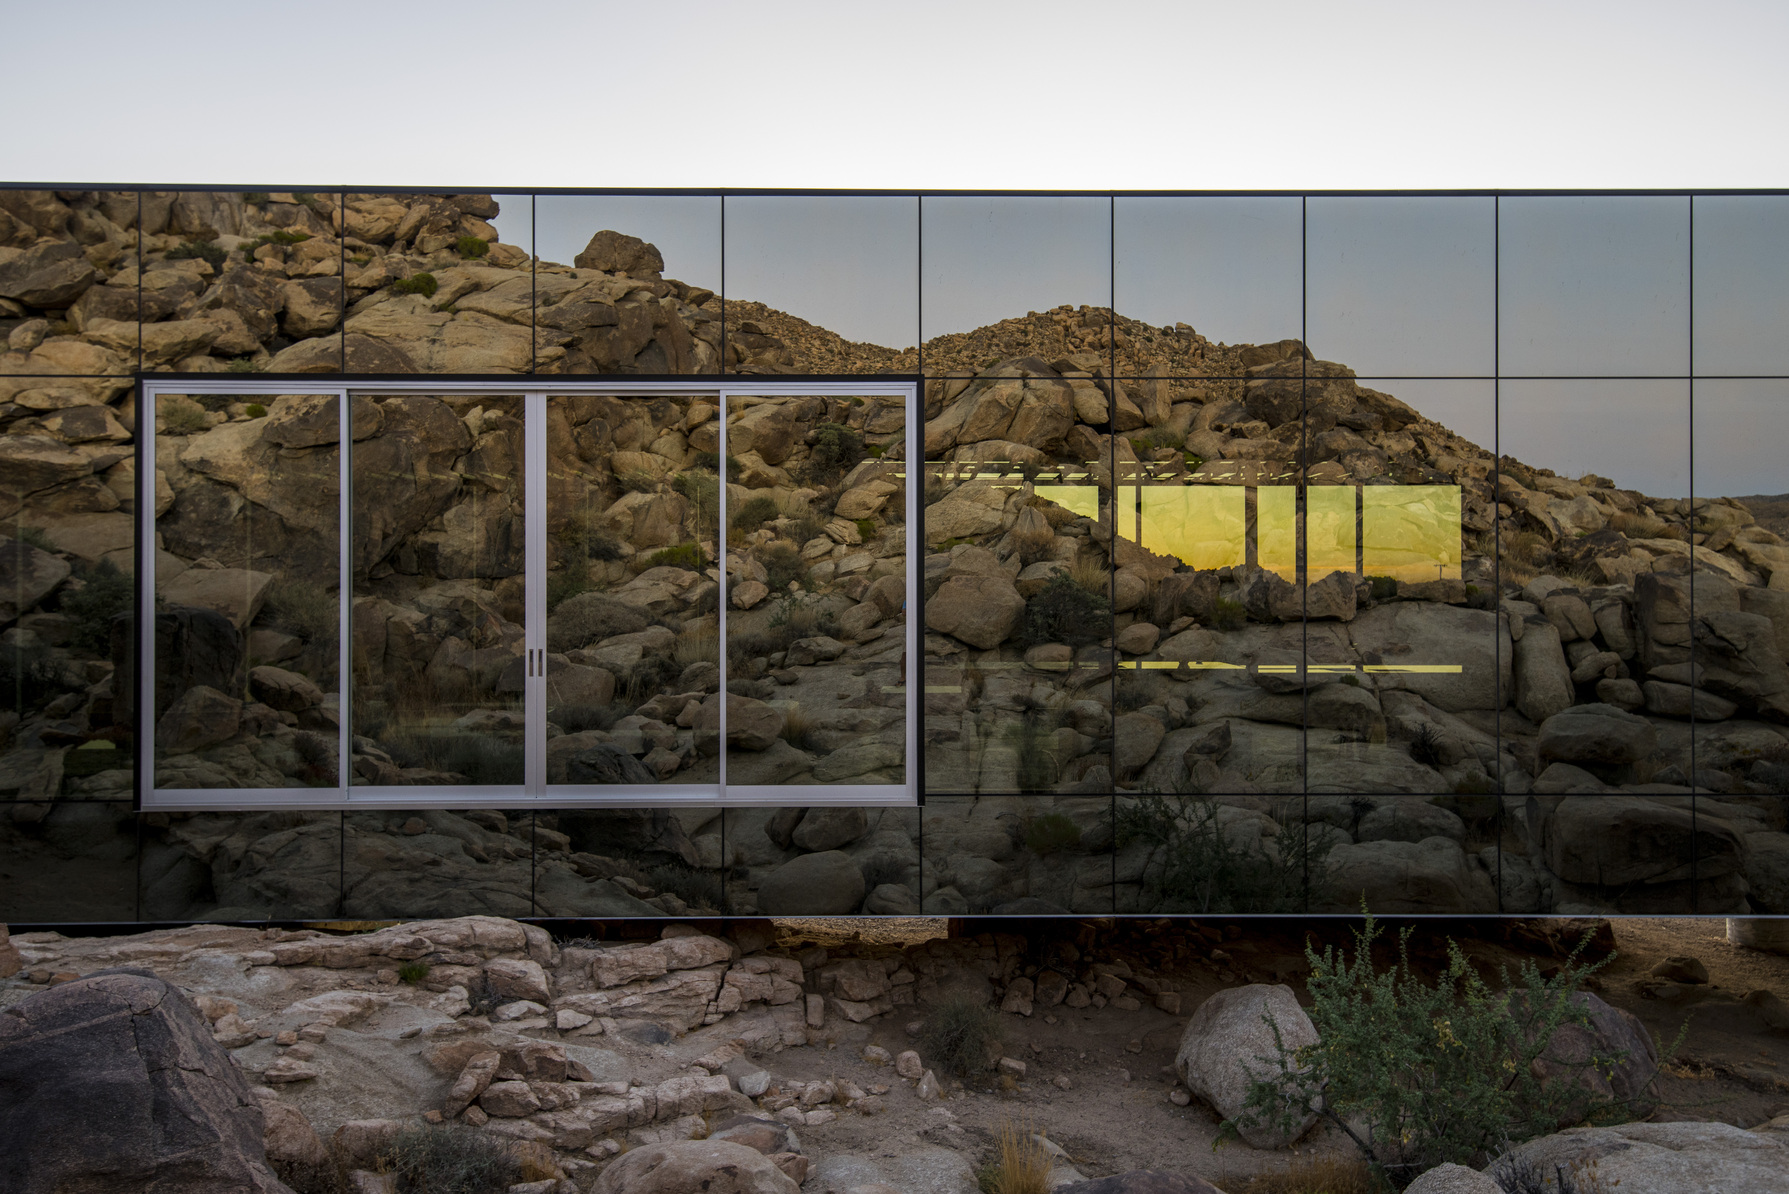 以镜面外墙映照周遭景观的 Invisible House，就如同隐形般消失在漠地中。